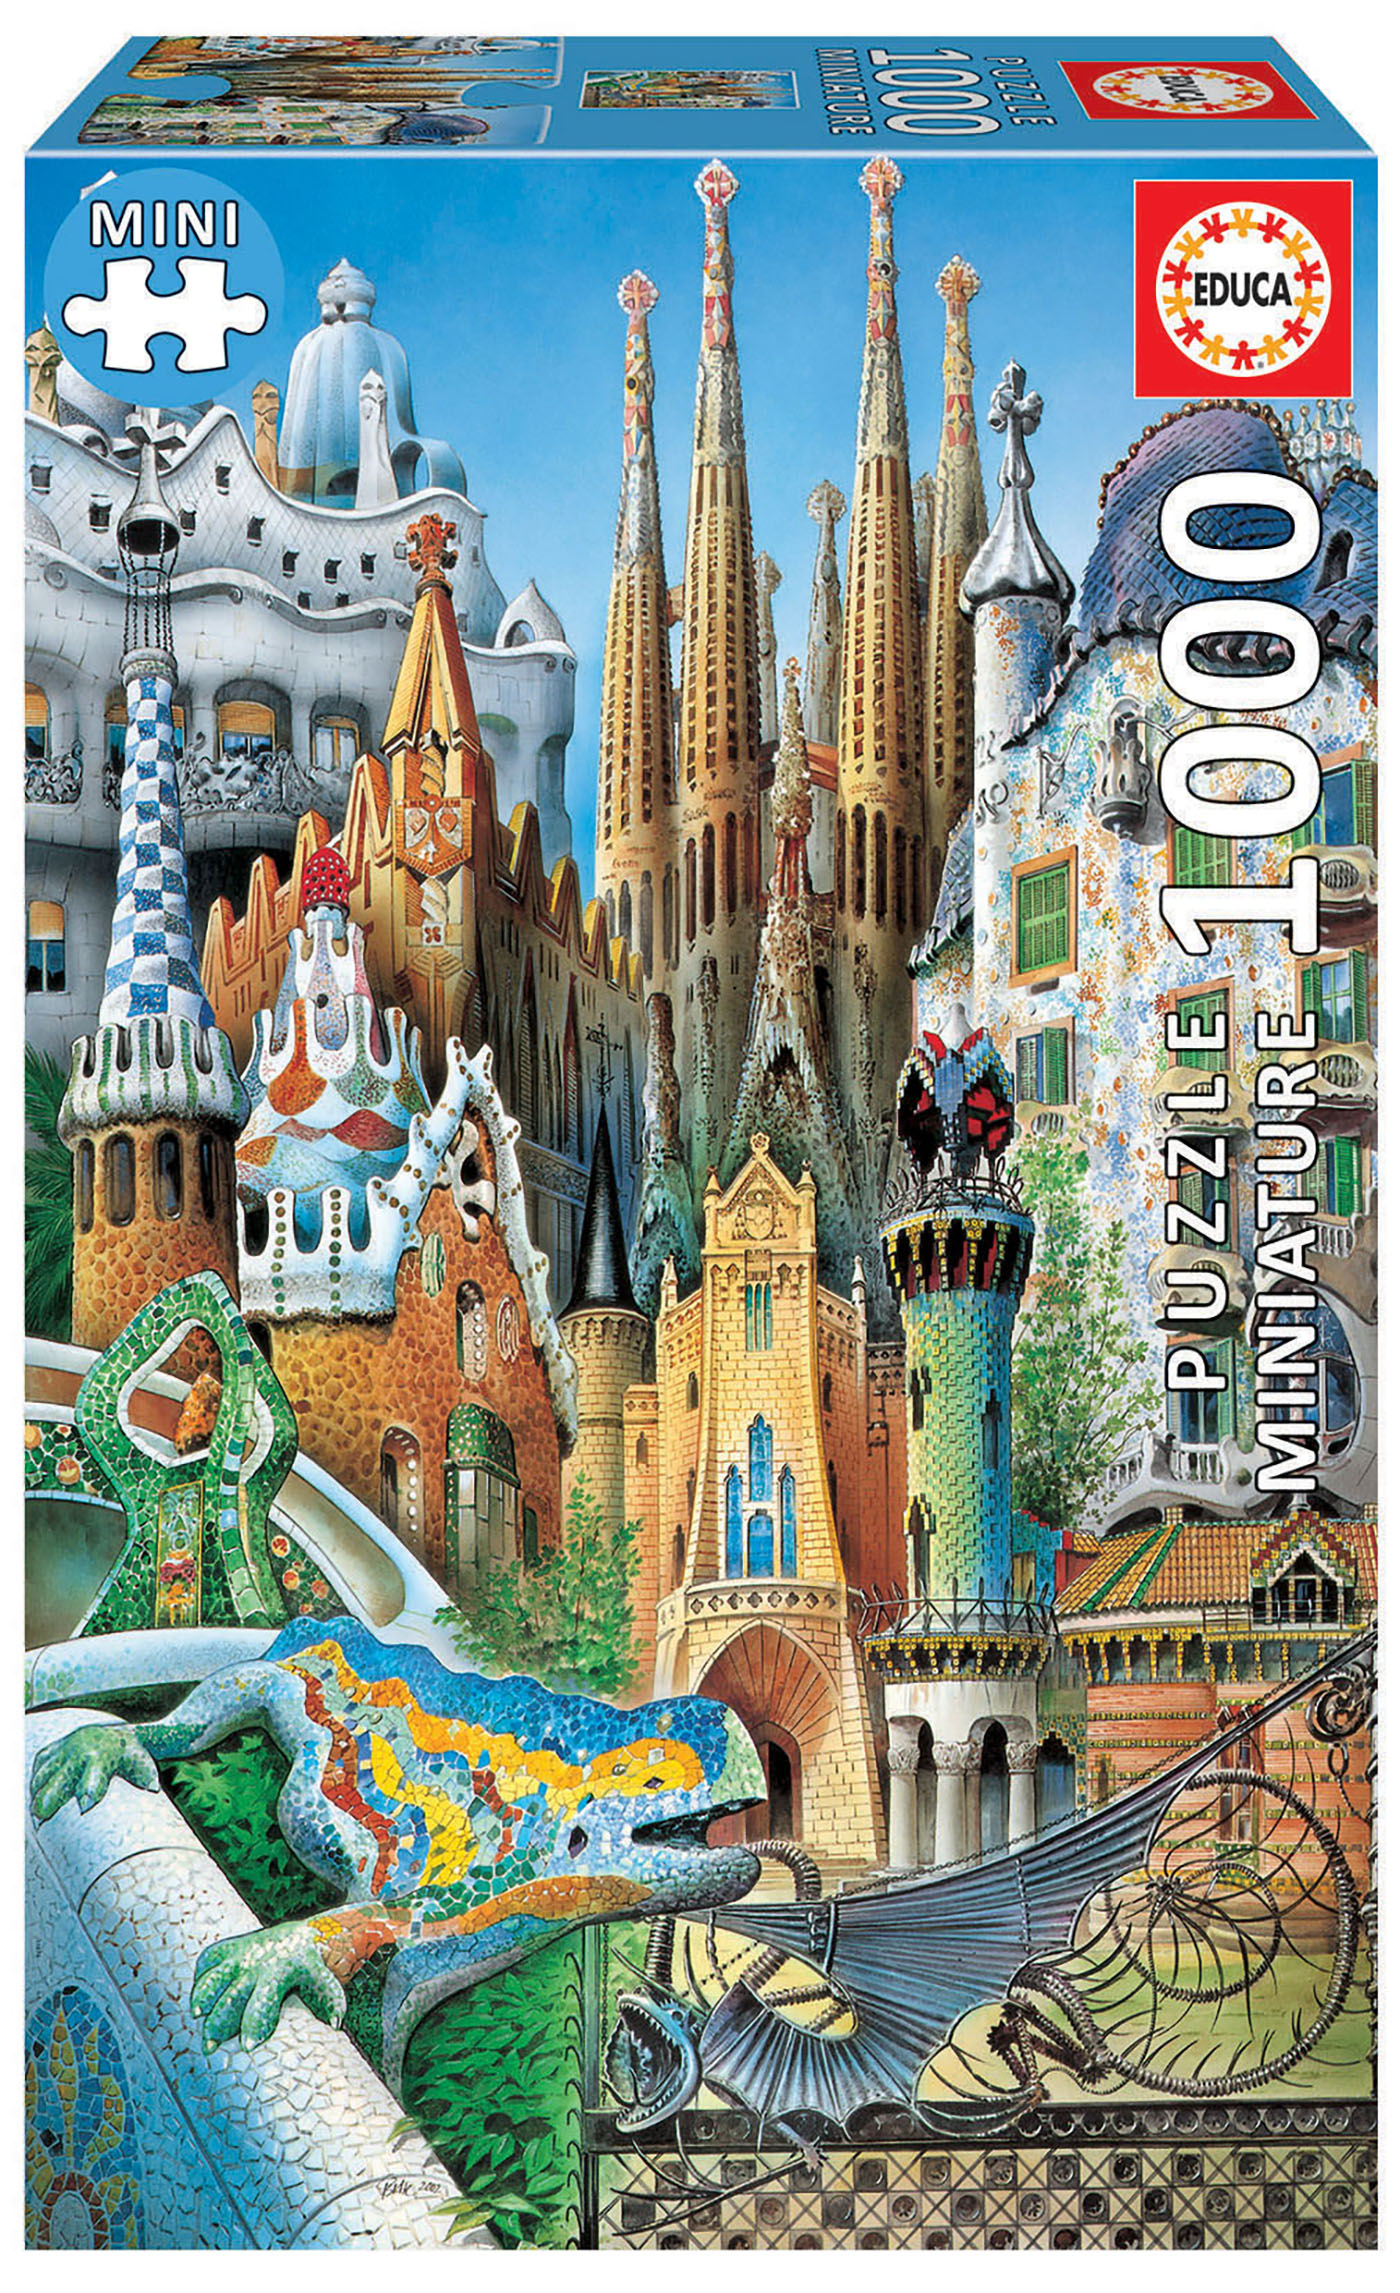 1000 Gaudí collage "Miniature"